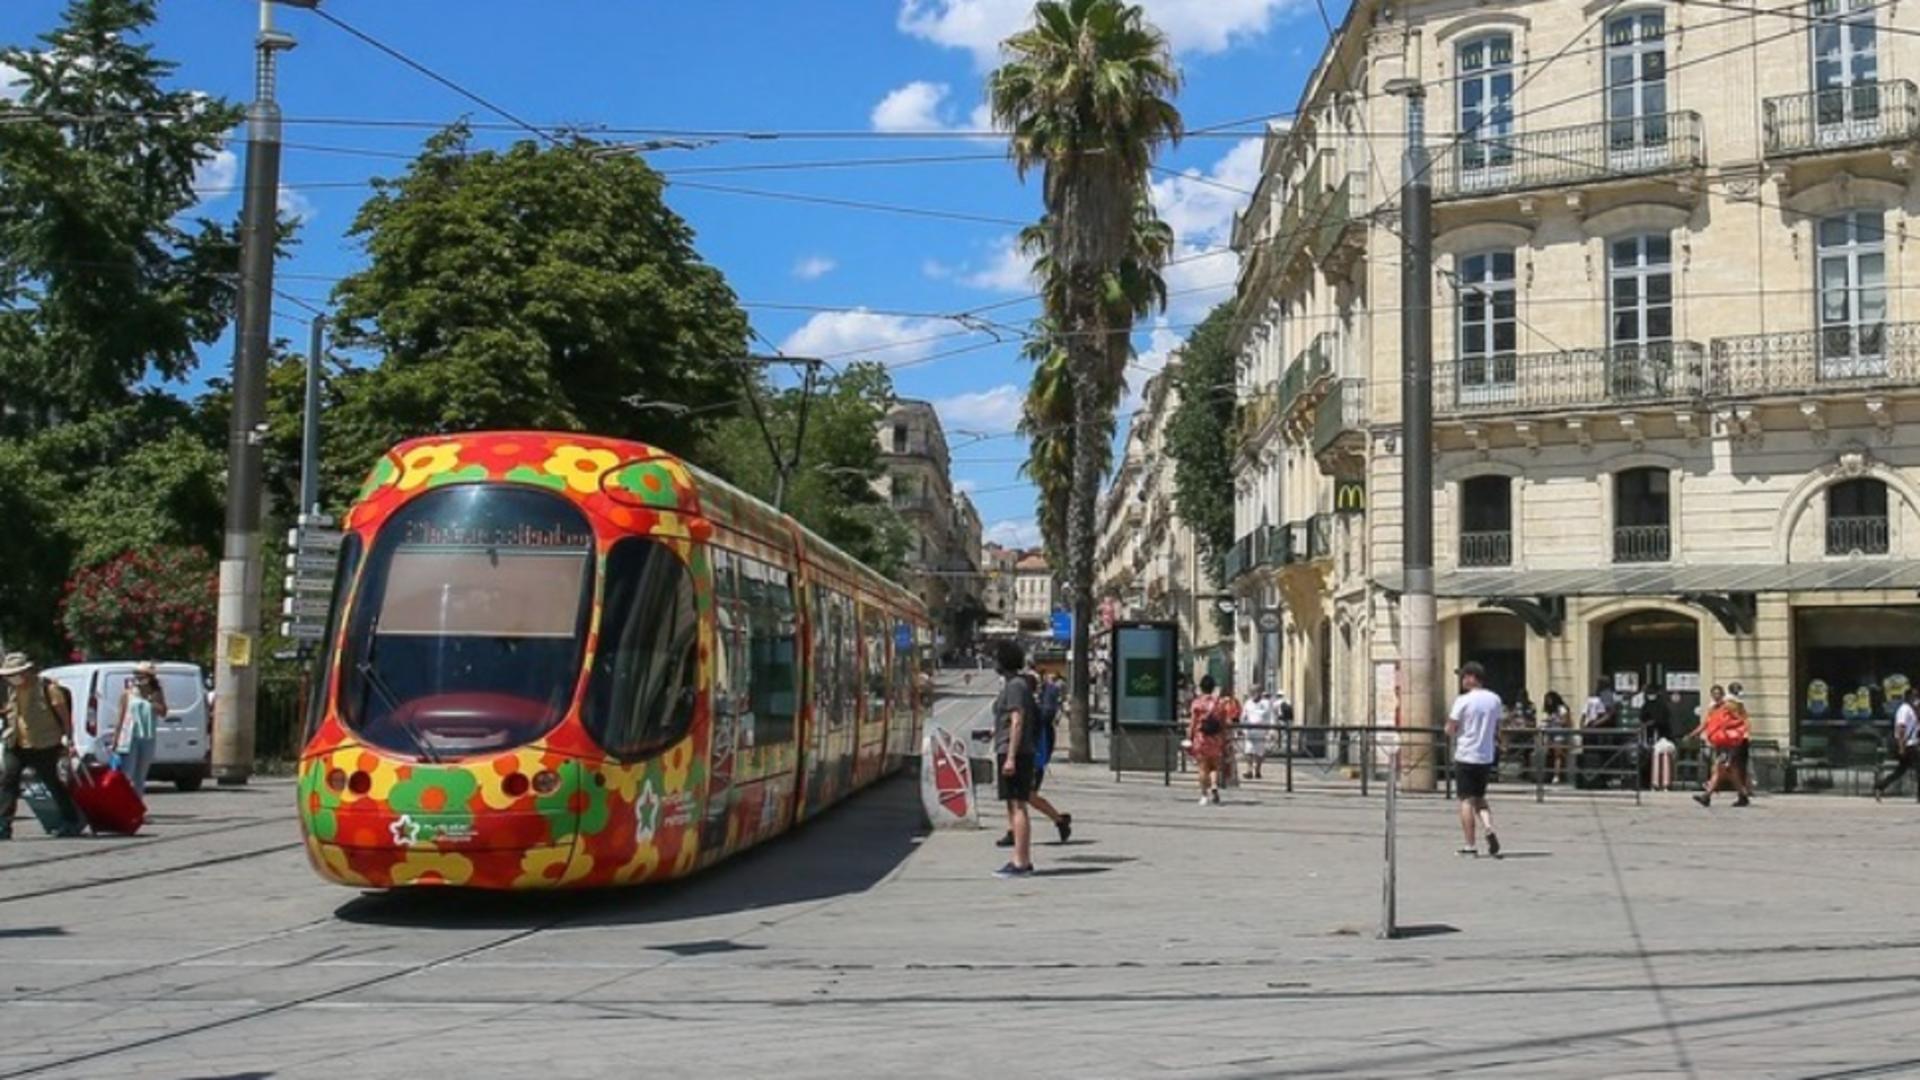 Motiv de sărbătoare pentru călători: O mare metropolă europeană trece la transport public gratuit